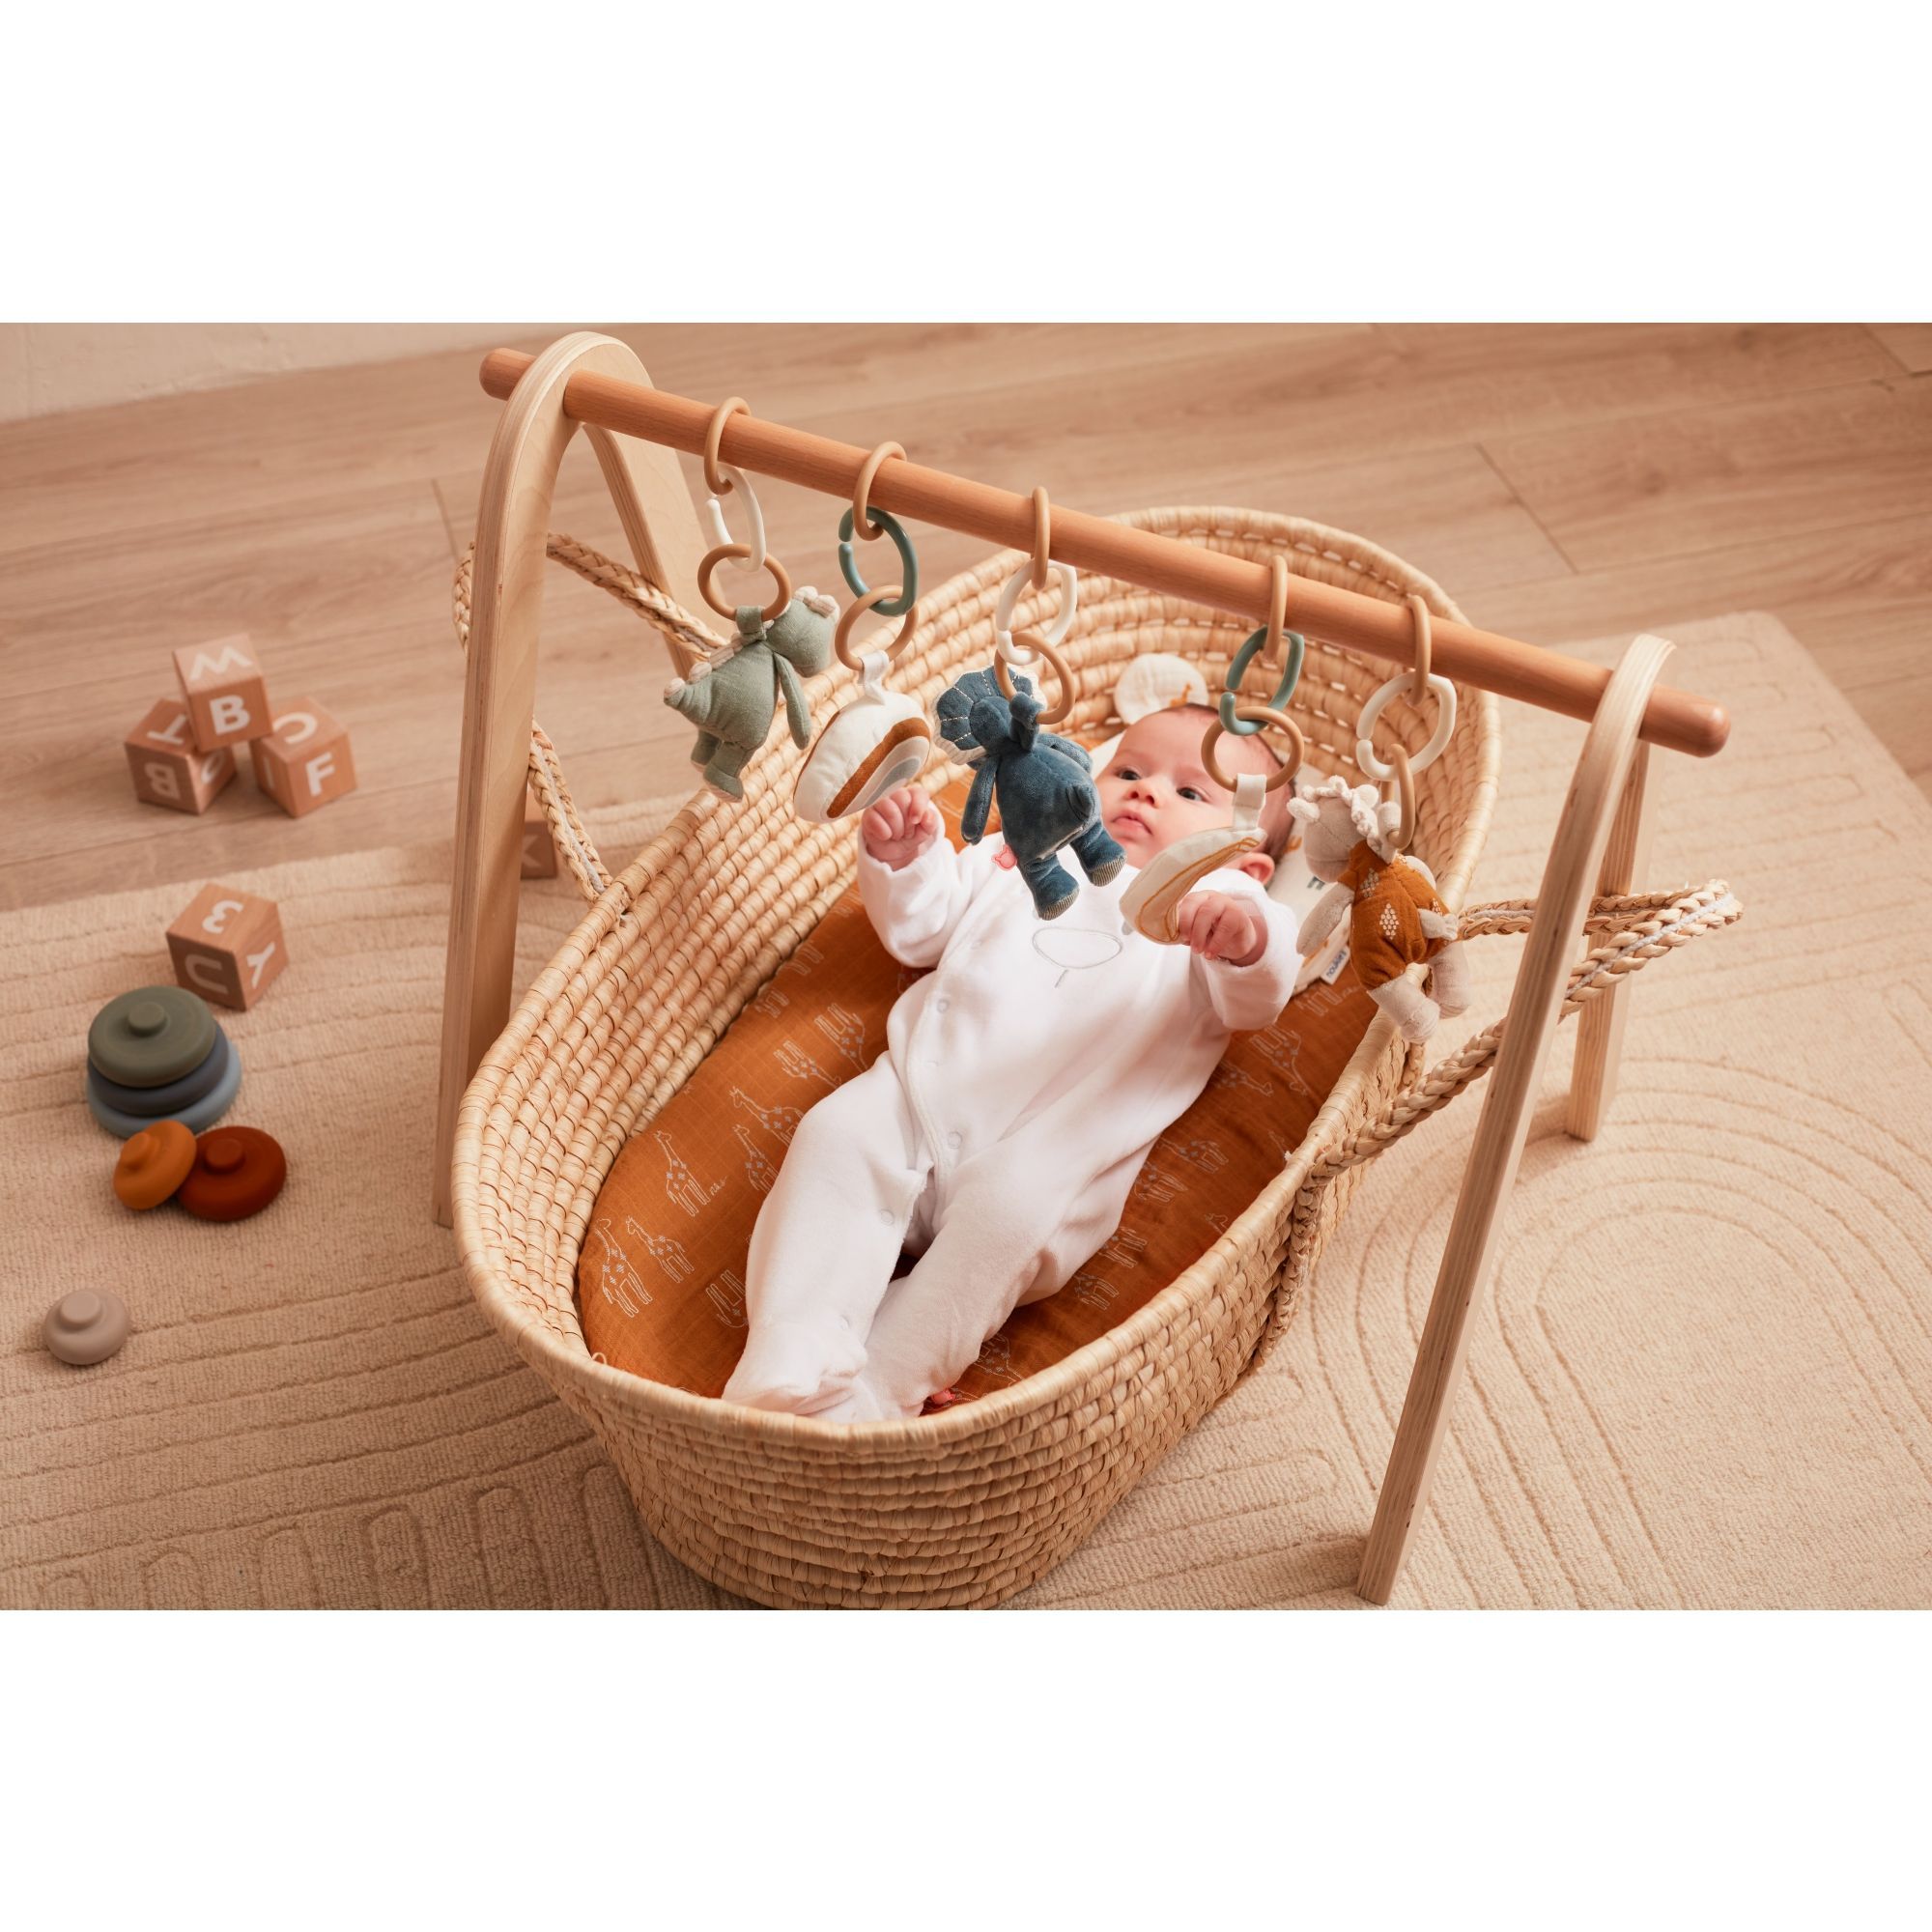 Arche de jeux universel en bois, pour développer l'éveil de bébé